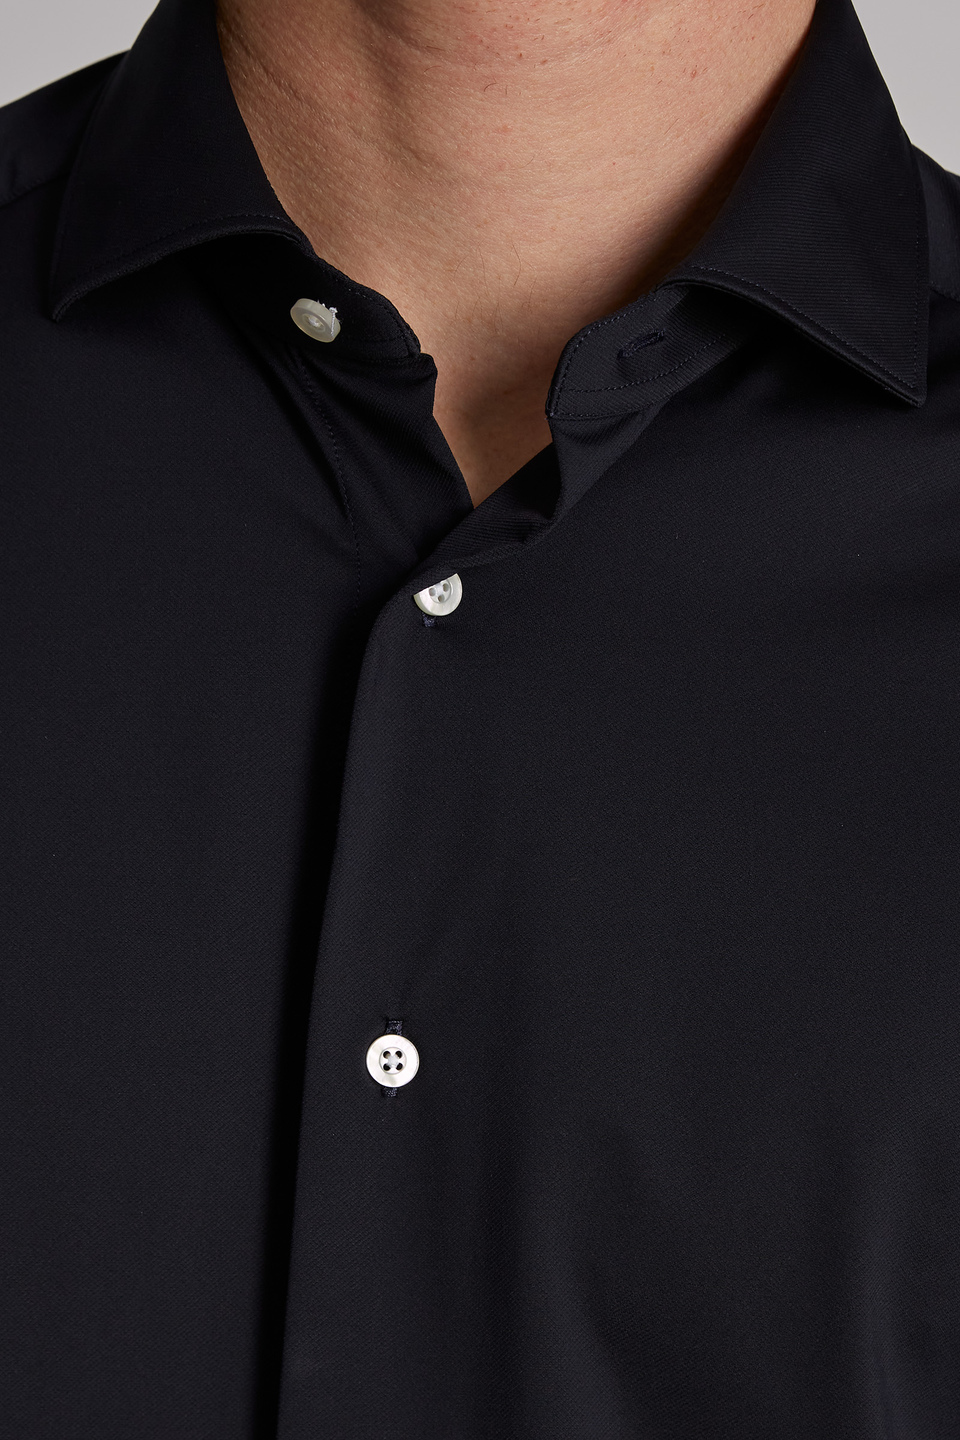 Blue Ribbon-Herrenhemd aus Baumwolljersey und langen Ärmeln im klassischen Schnitt | La Martina - Official Online Shop